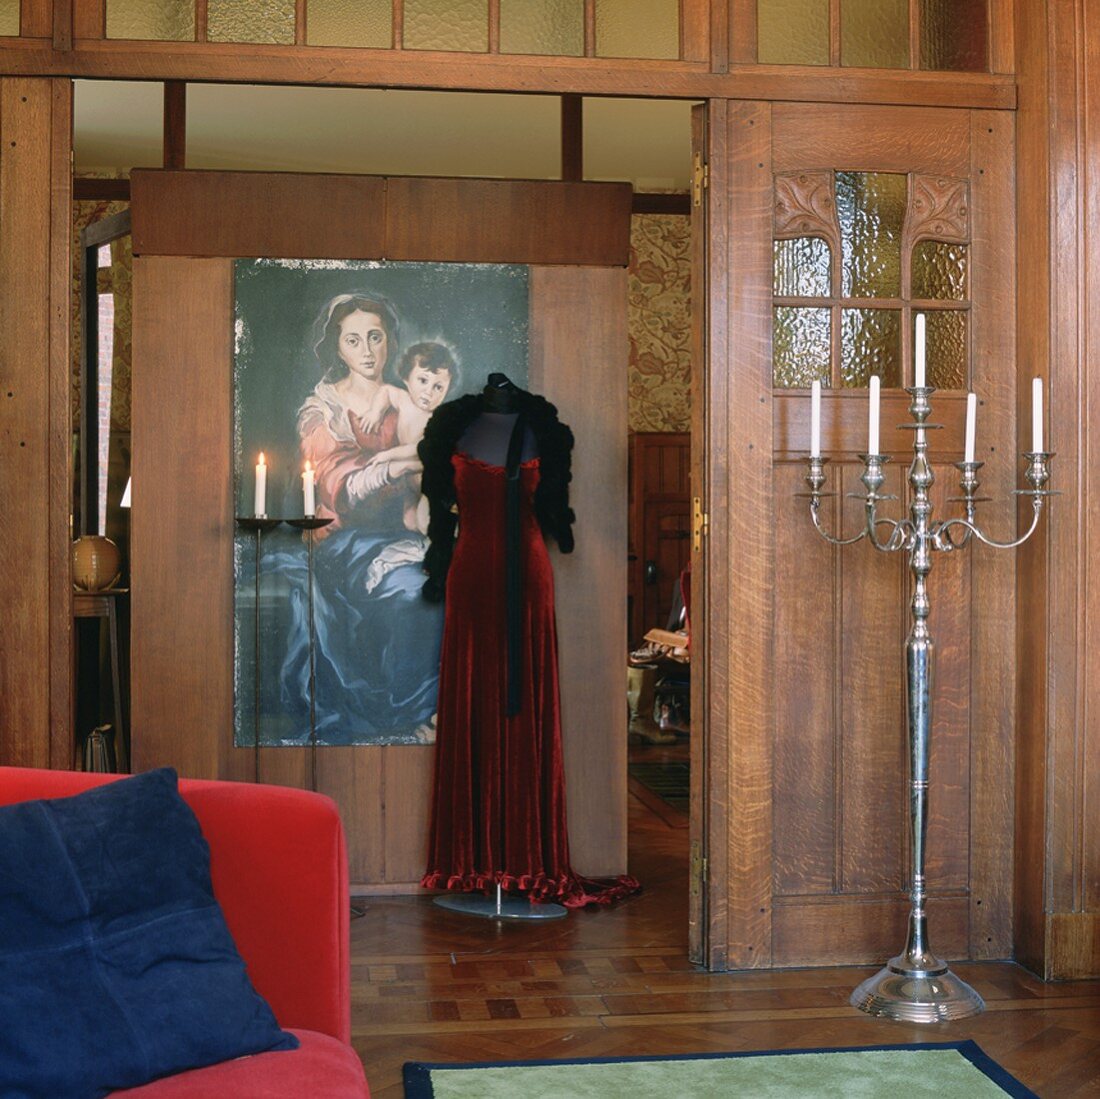 Stehkandelaber und Schaufensterpuppe mit rotem Abendkleid in einem historischen Wohnraum